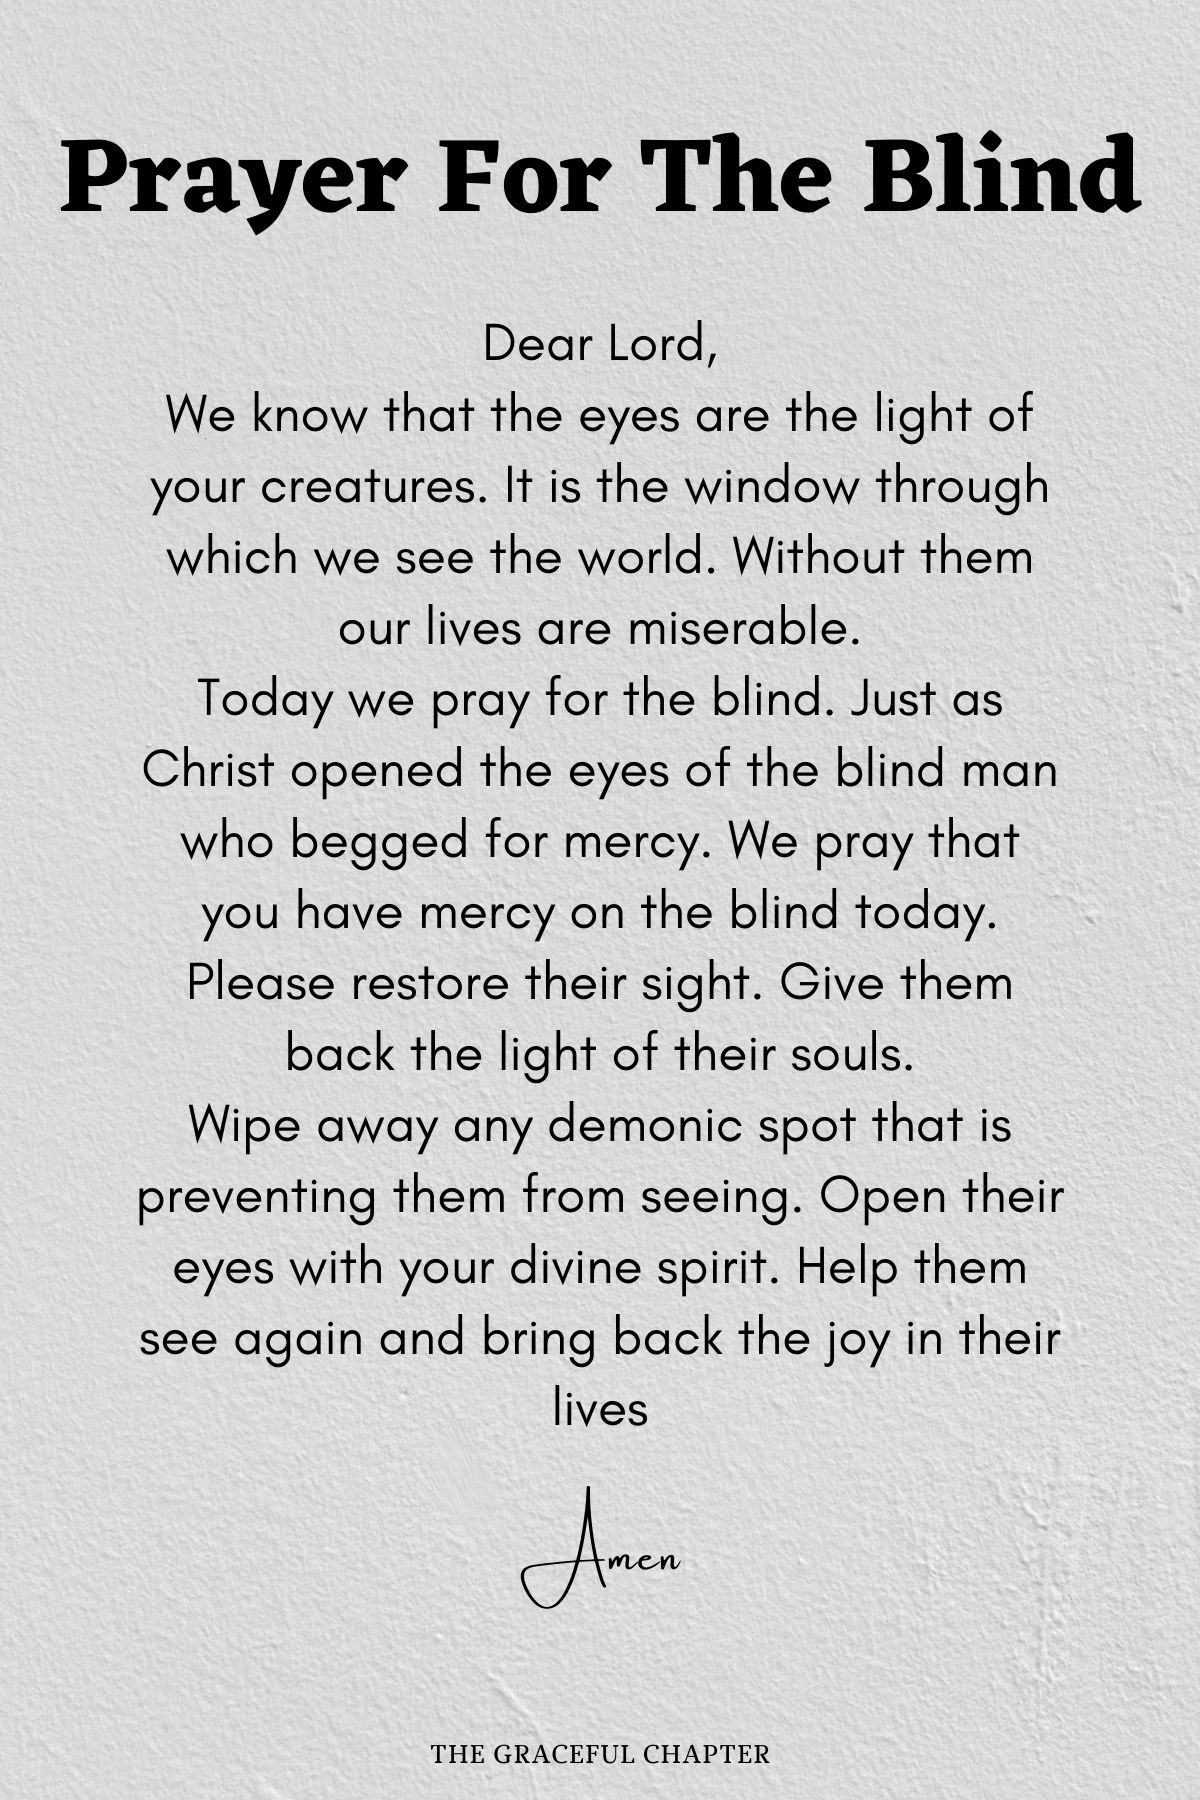 Prayer for the blind